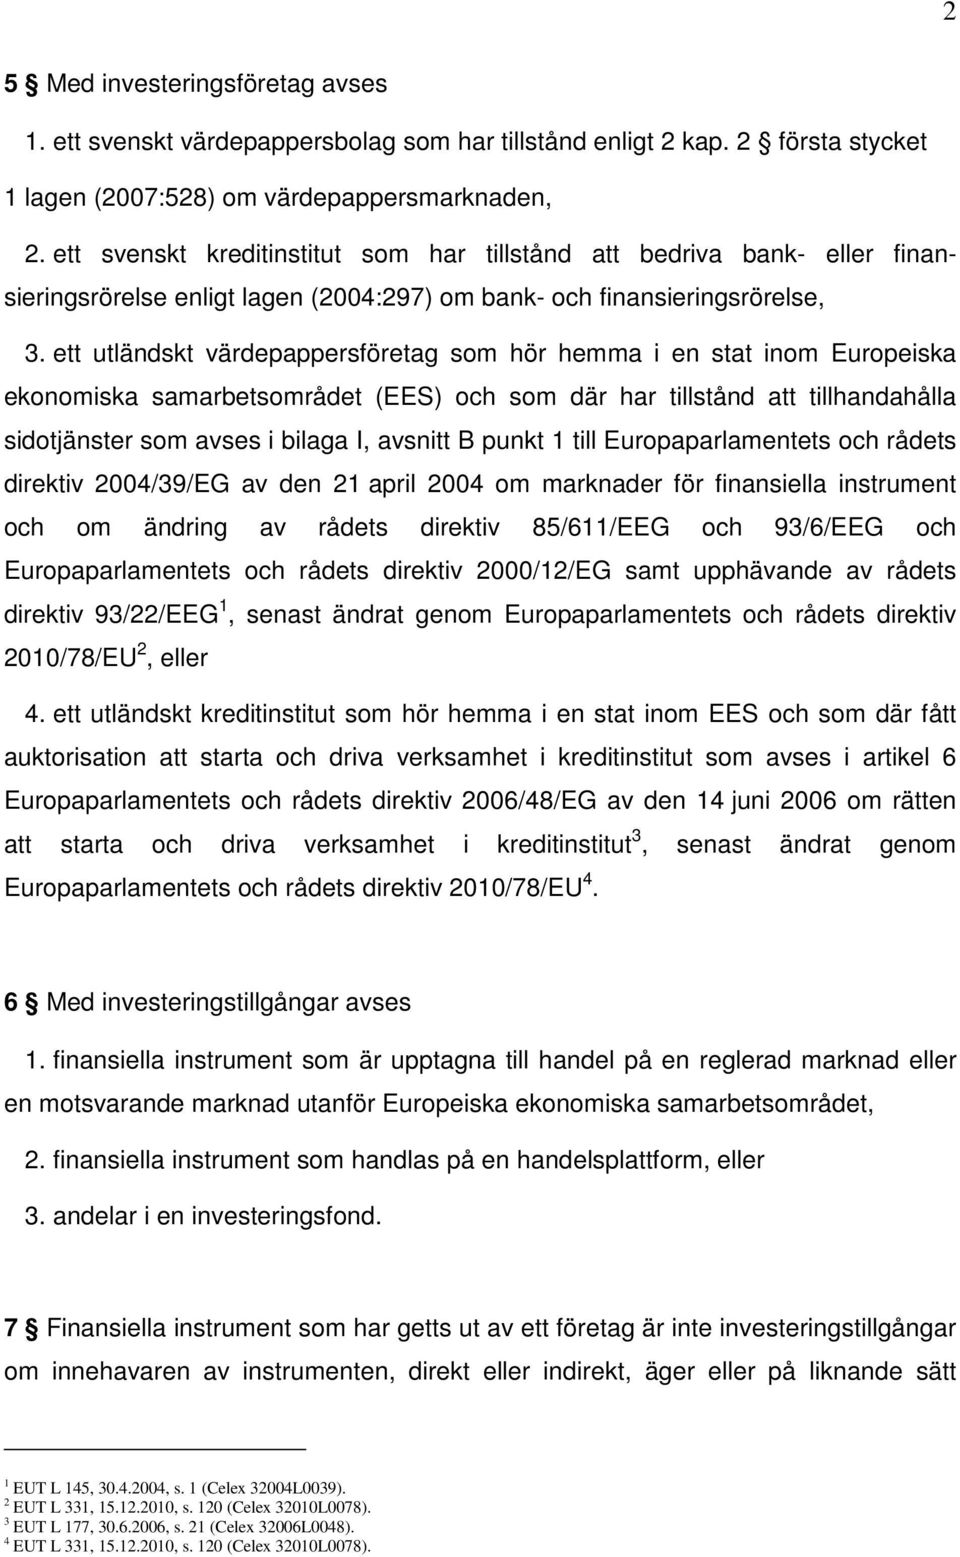 ett utländskt värdepappersföretag som hör hemma i en stat inom Europeiska ekonomiska samarbetsområdet (EES) och som där har tillstånd att tillhandahålla sidotjänster som avses i bilaga I, avsnitt B